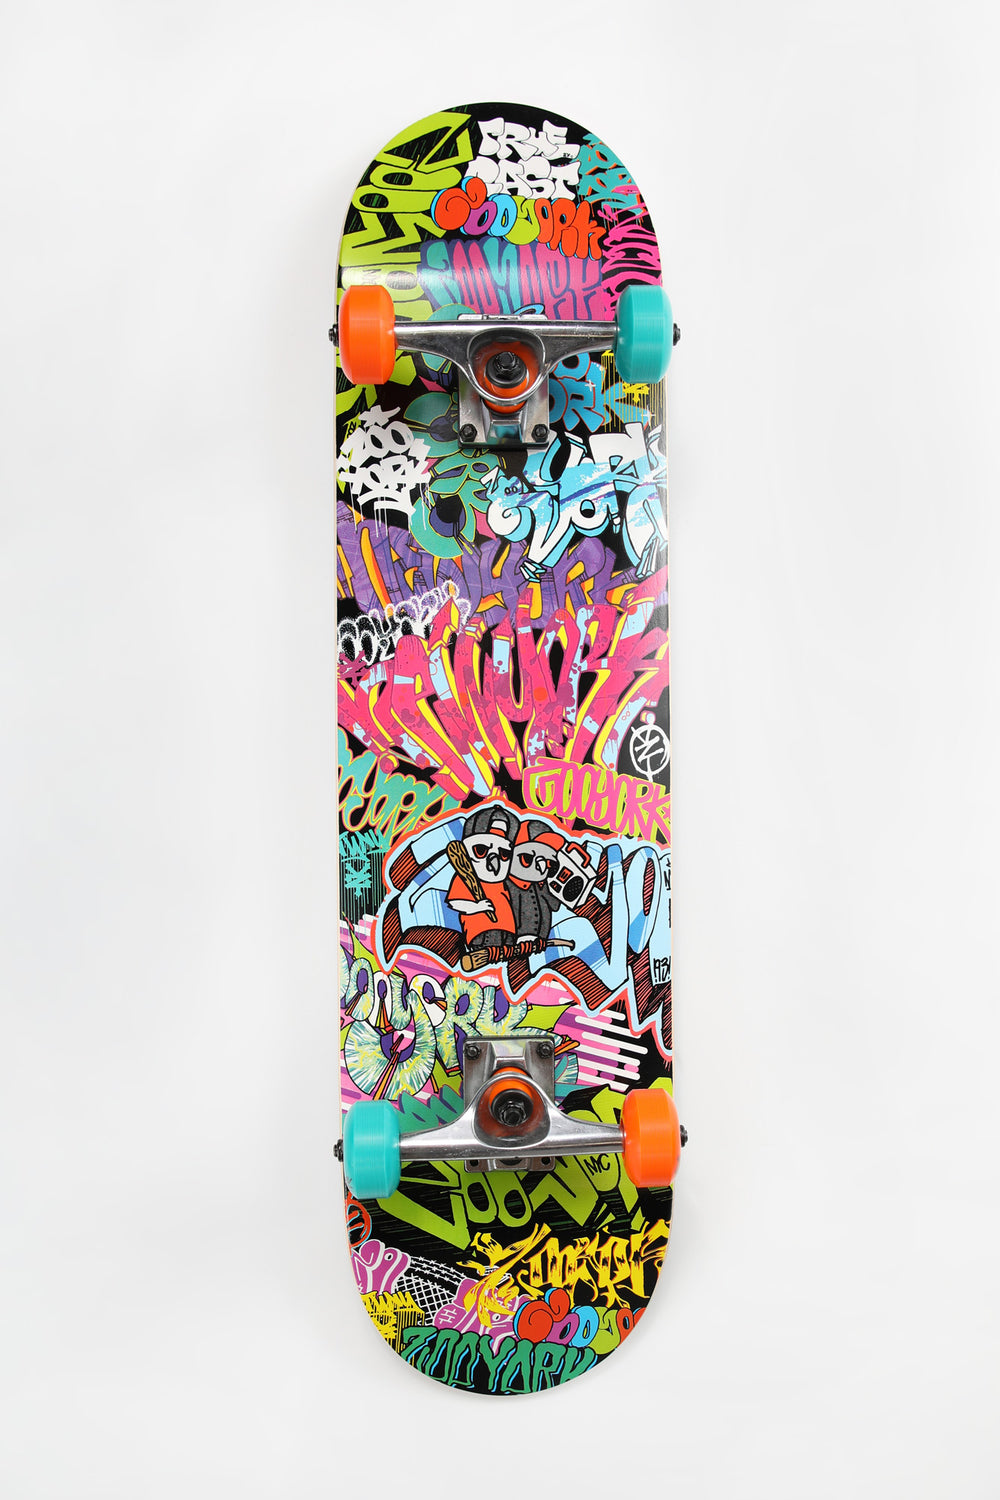 Skateboard Imprimé Graffiti Zoo York 7.75